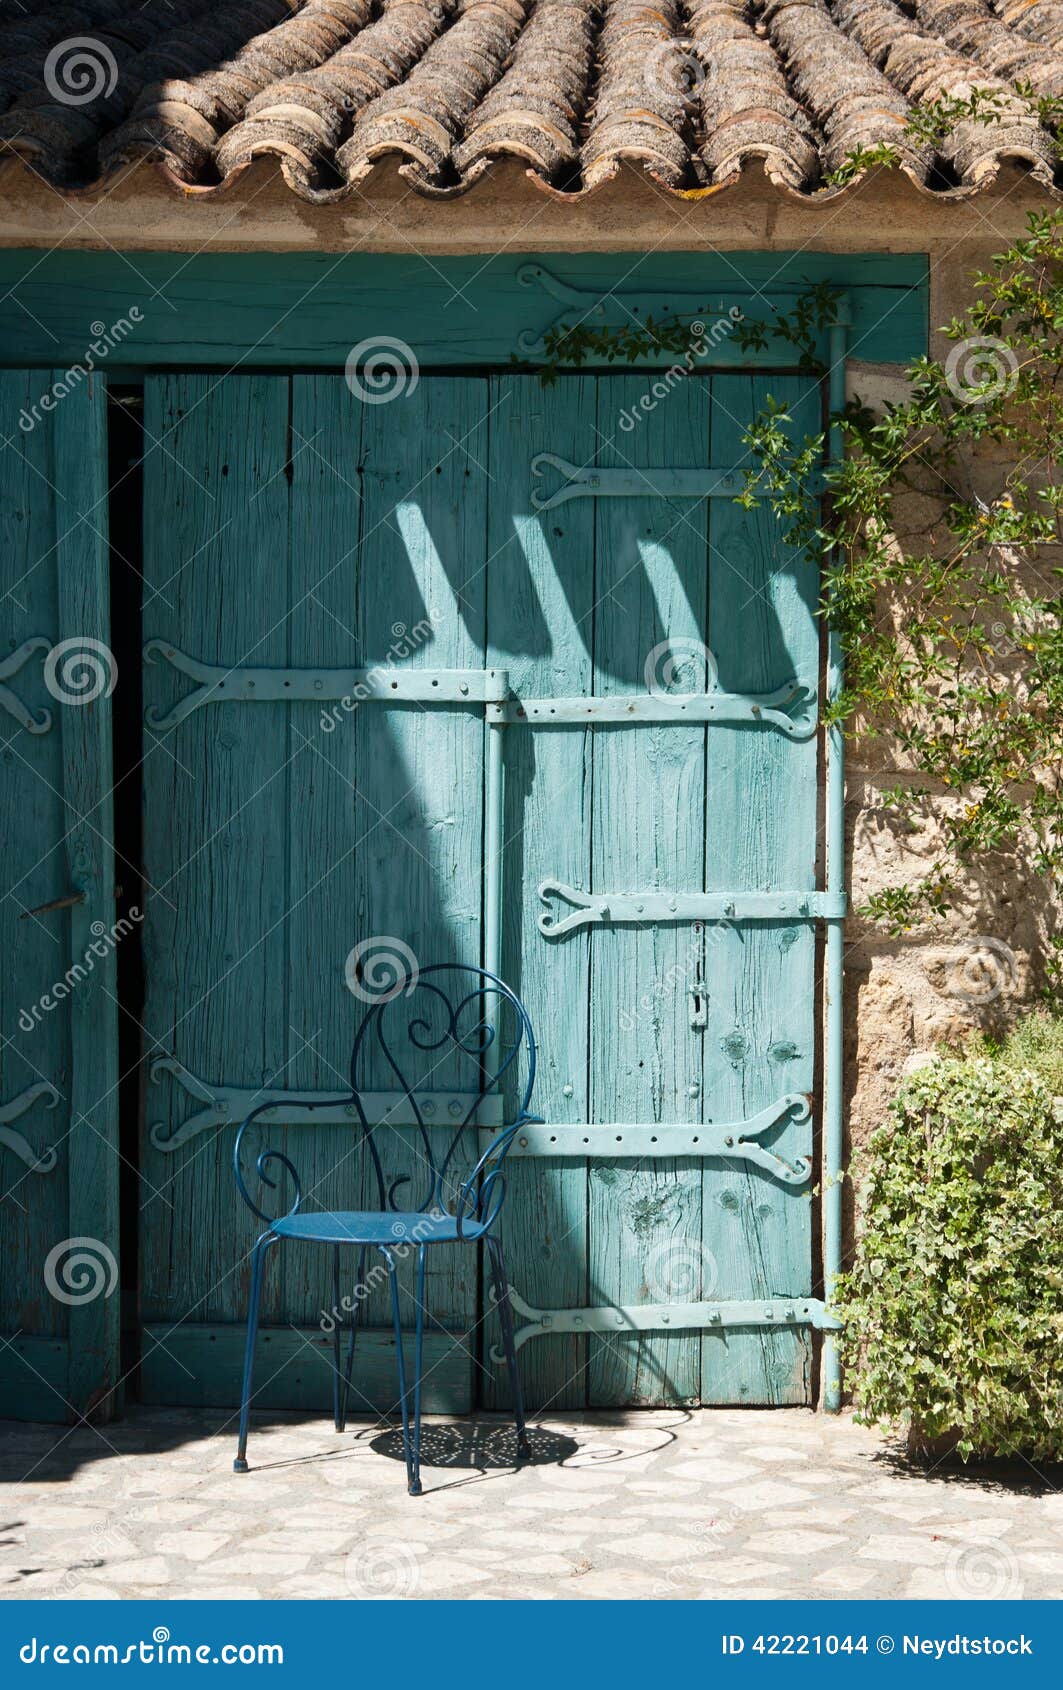 Mediterranean blue door stock photo. Image of garden - 42221044